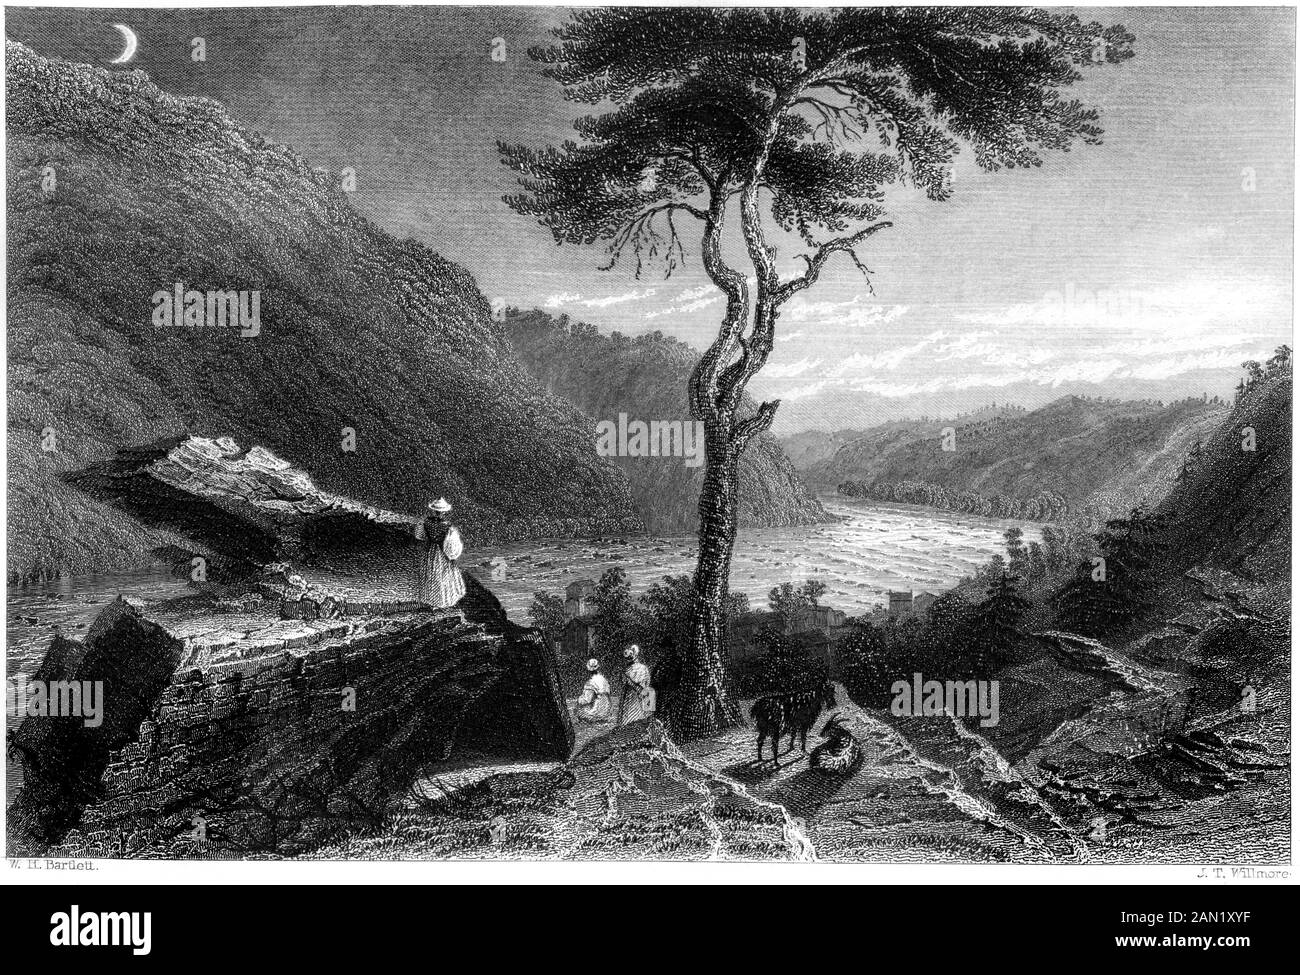 Una incisione della valle di Shenandoah, da Jefferson Rock (harpers Ferry) scansionati ad alta risoluzione. Da un libro stampato in 1840. Foto Stock